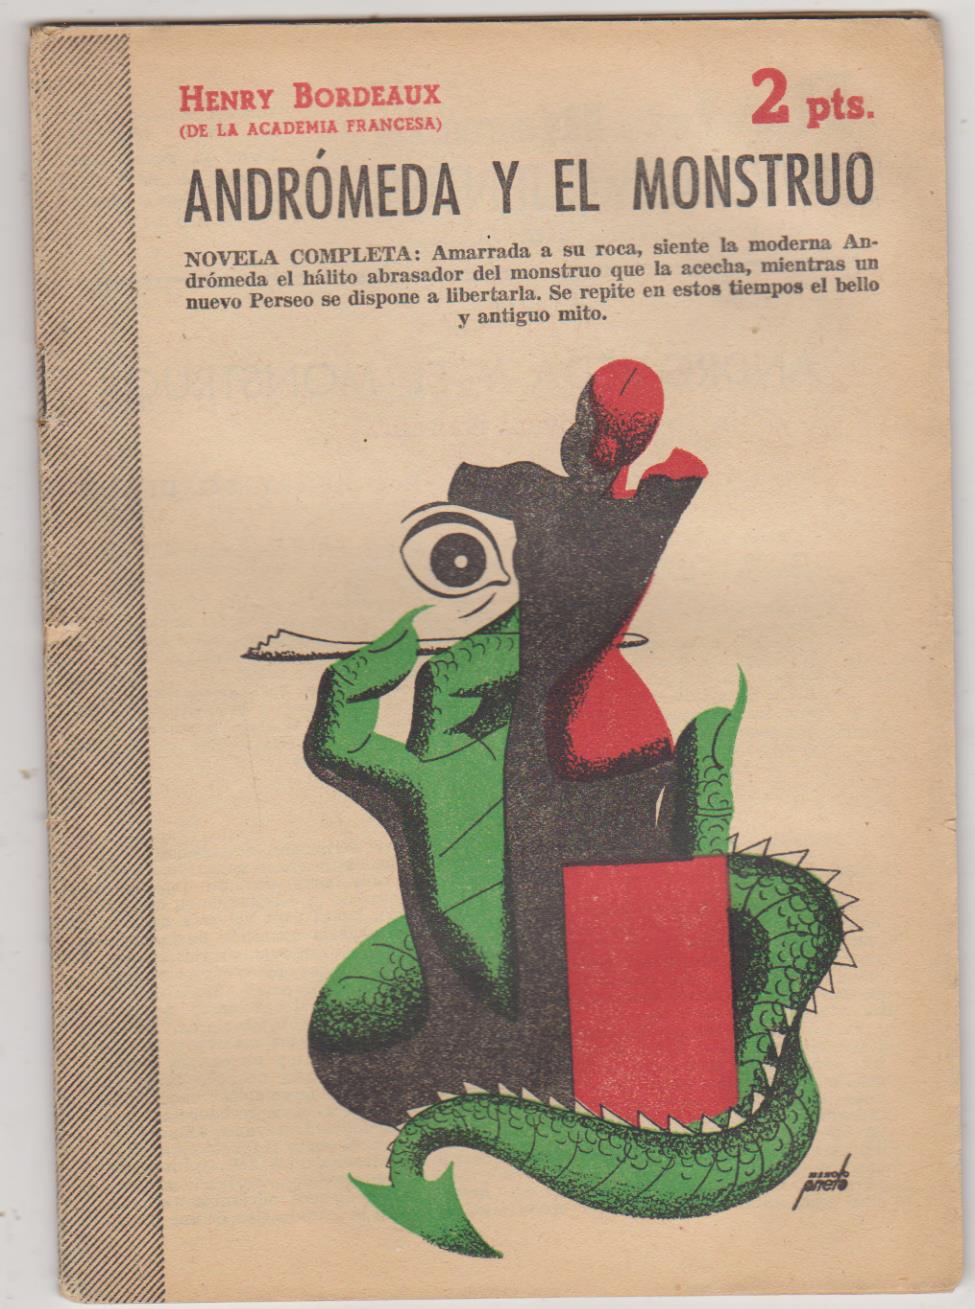 Revista Literaria nº 1150. Henry Bordeaux. Andrómeda y el Monstruo. Año 1950